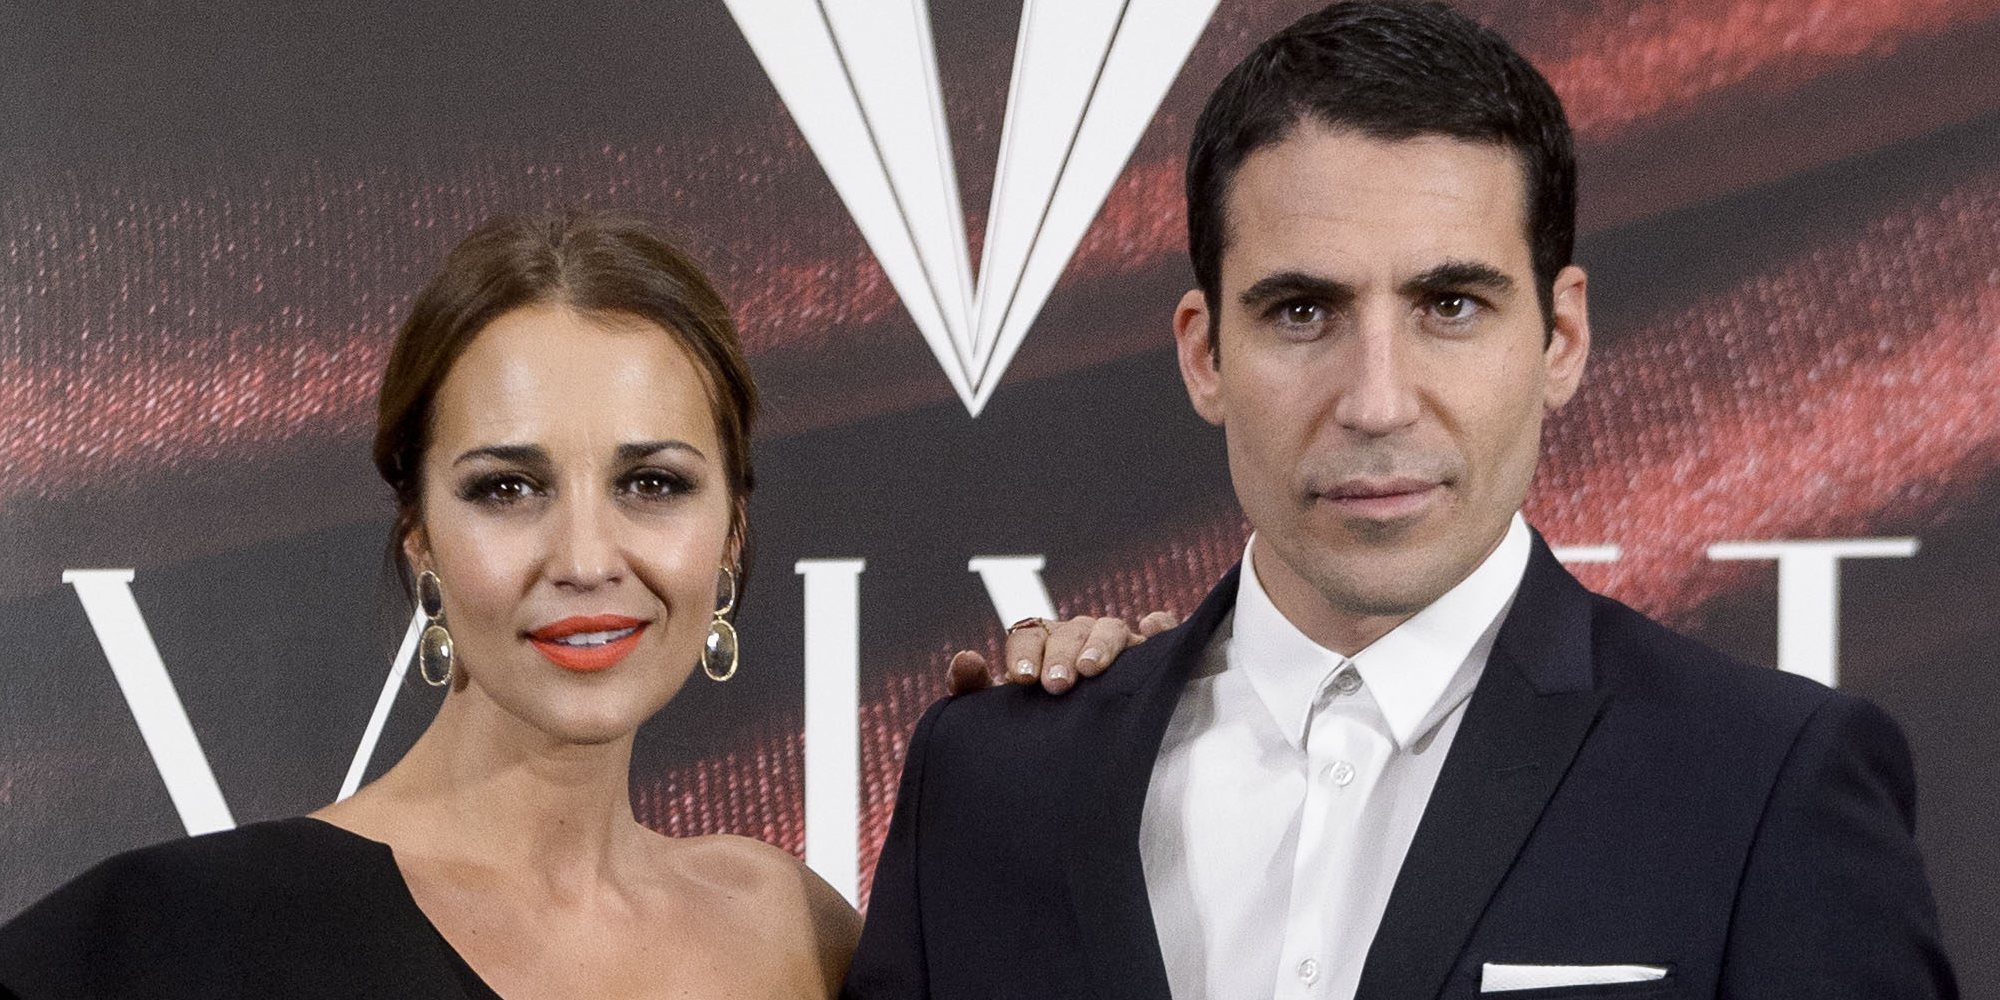 Miguel Ángel Silvestre y Paula Echevarría aparecerán en el episodio final de 'Velvet Colección'